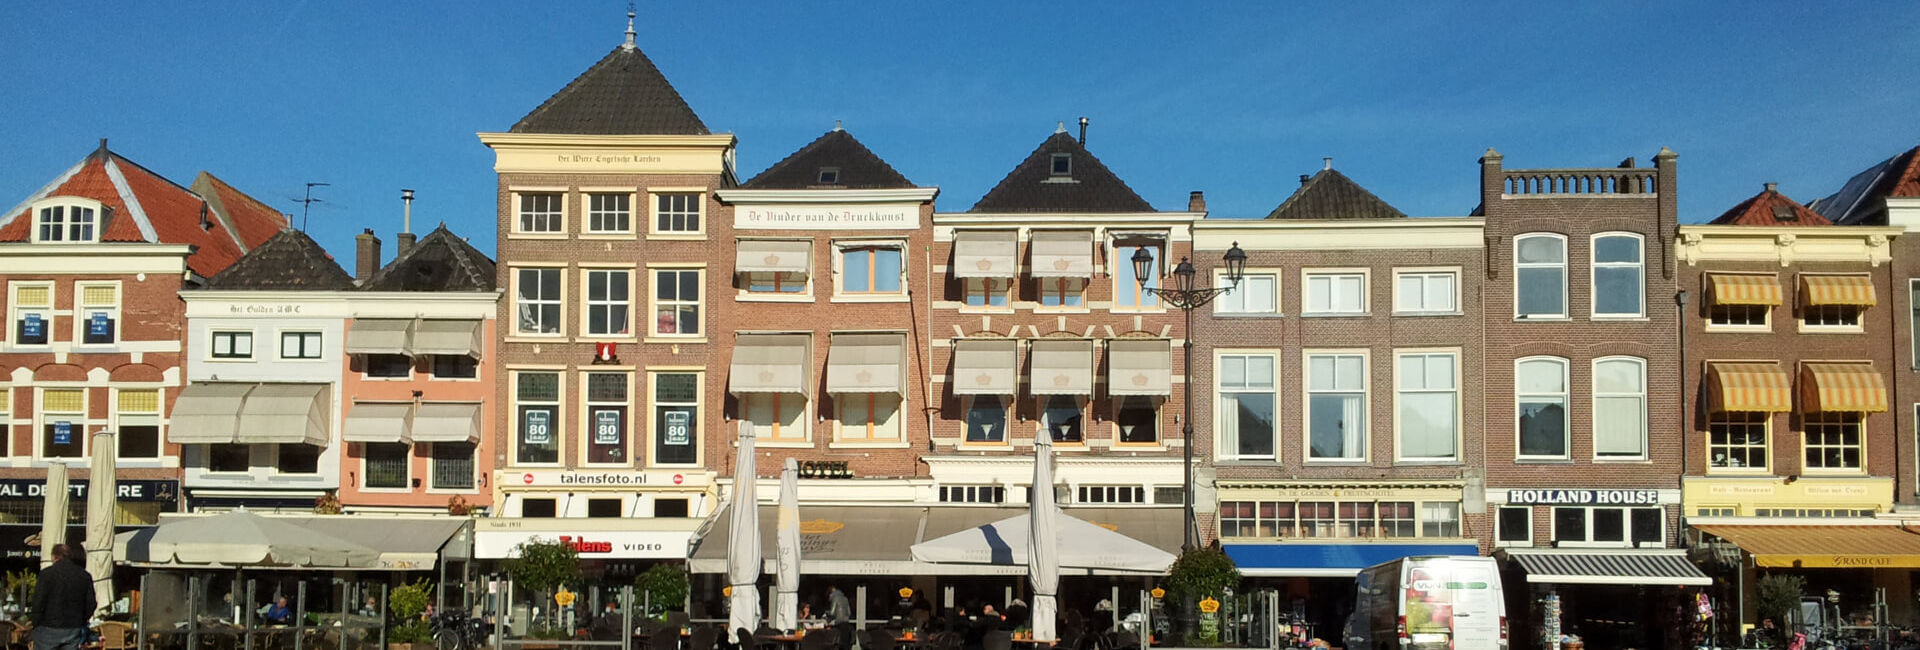 Cafées aan het marktplein in Delft